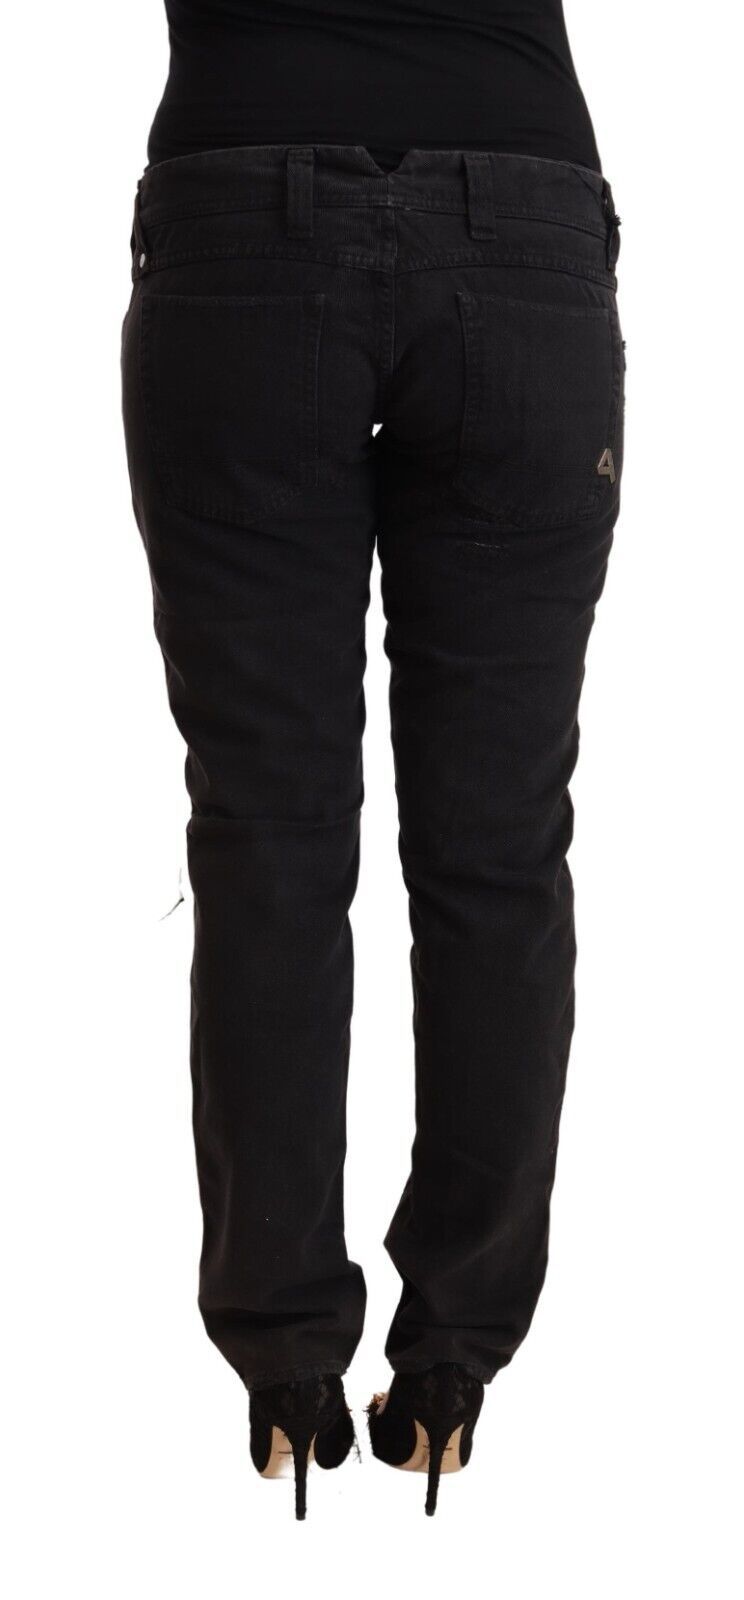 Ciclo in cotone nero in difficoltà a bassa vita sottili jeans denim